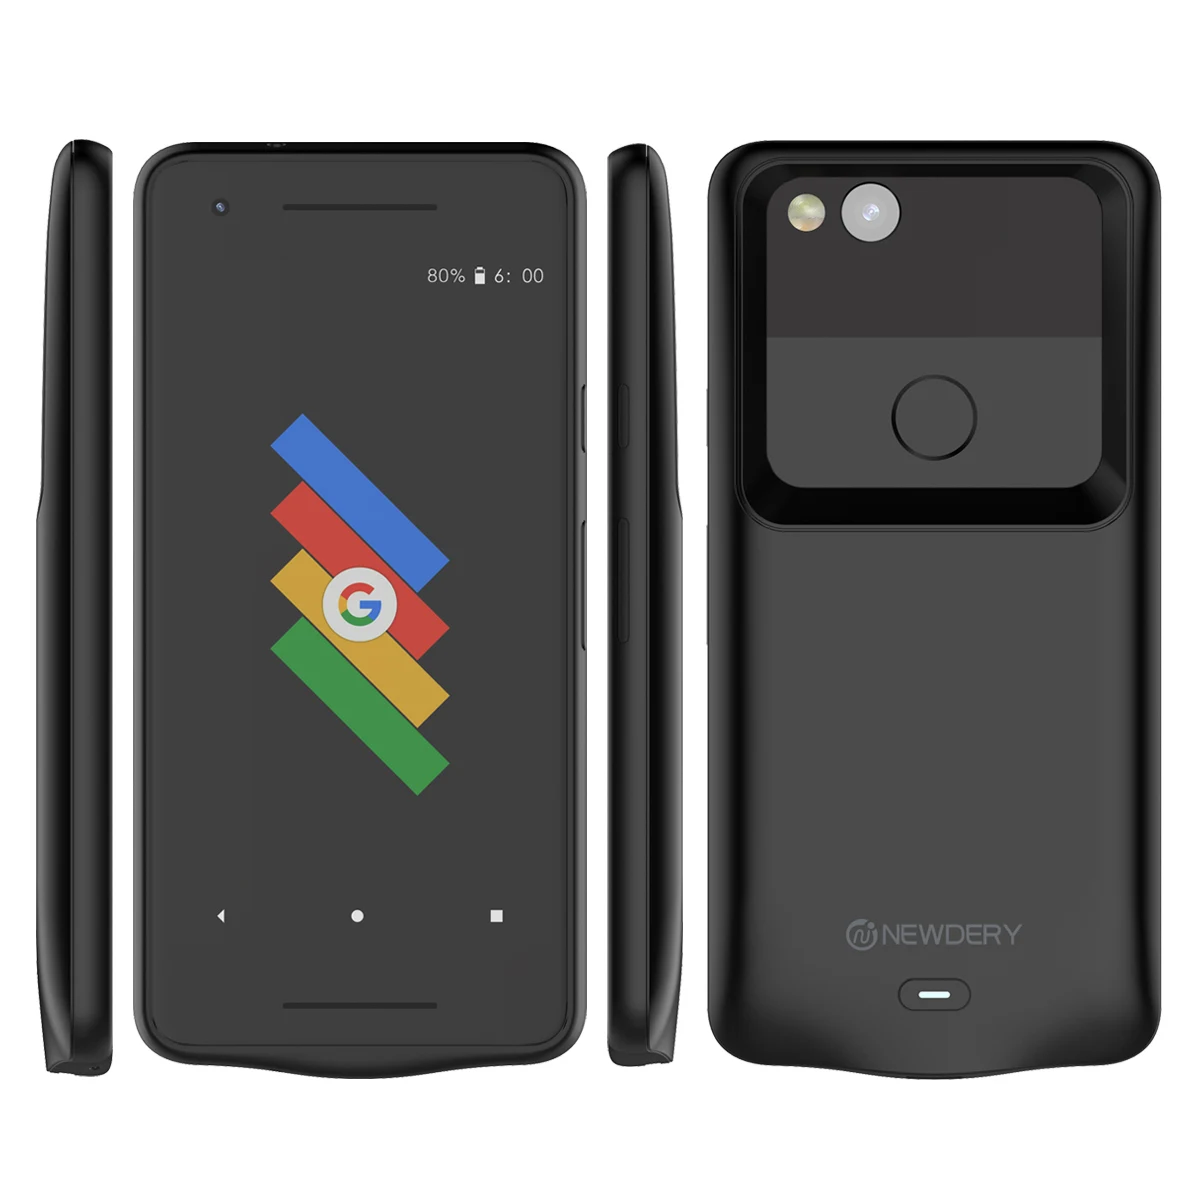 Чехол WIN 5200 мАч, чехол для зарядного устройства для Google Pixel 2 XL, чехол, внешний аккумулятор, чехол для зарядки, ультра тонкий внешний аккумулятор, чехол для зарядного устройства